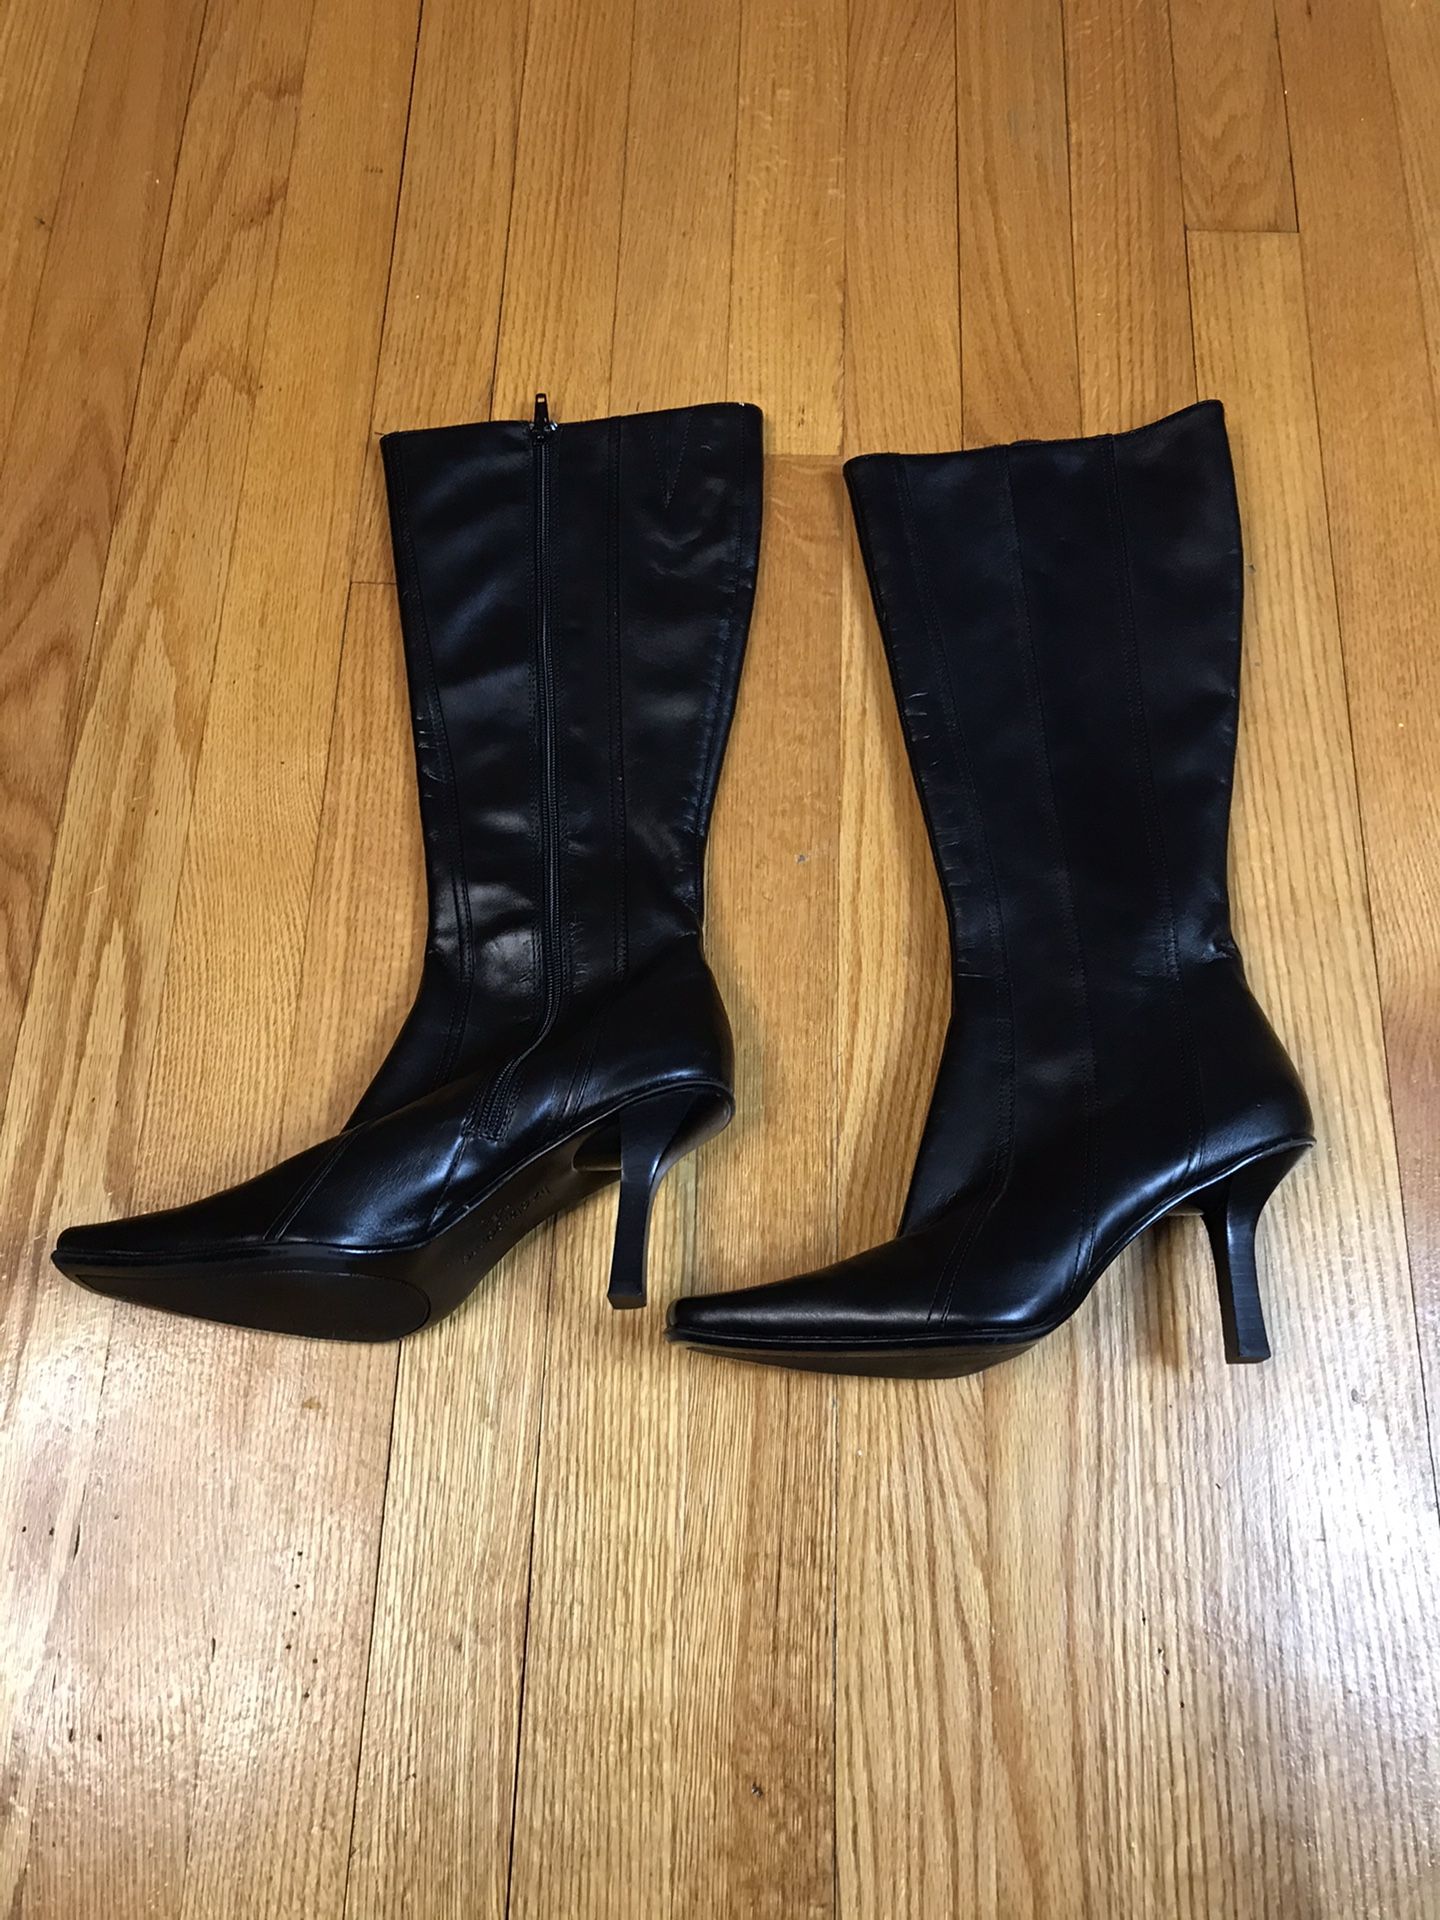 Liz Claiborne Flex boots Gently used Size 7.5